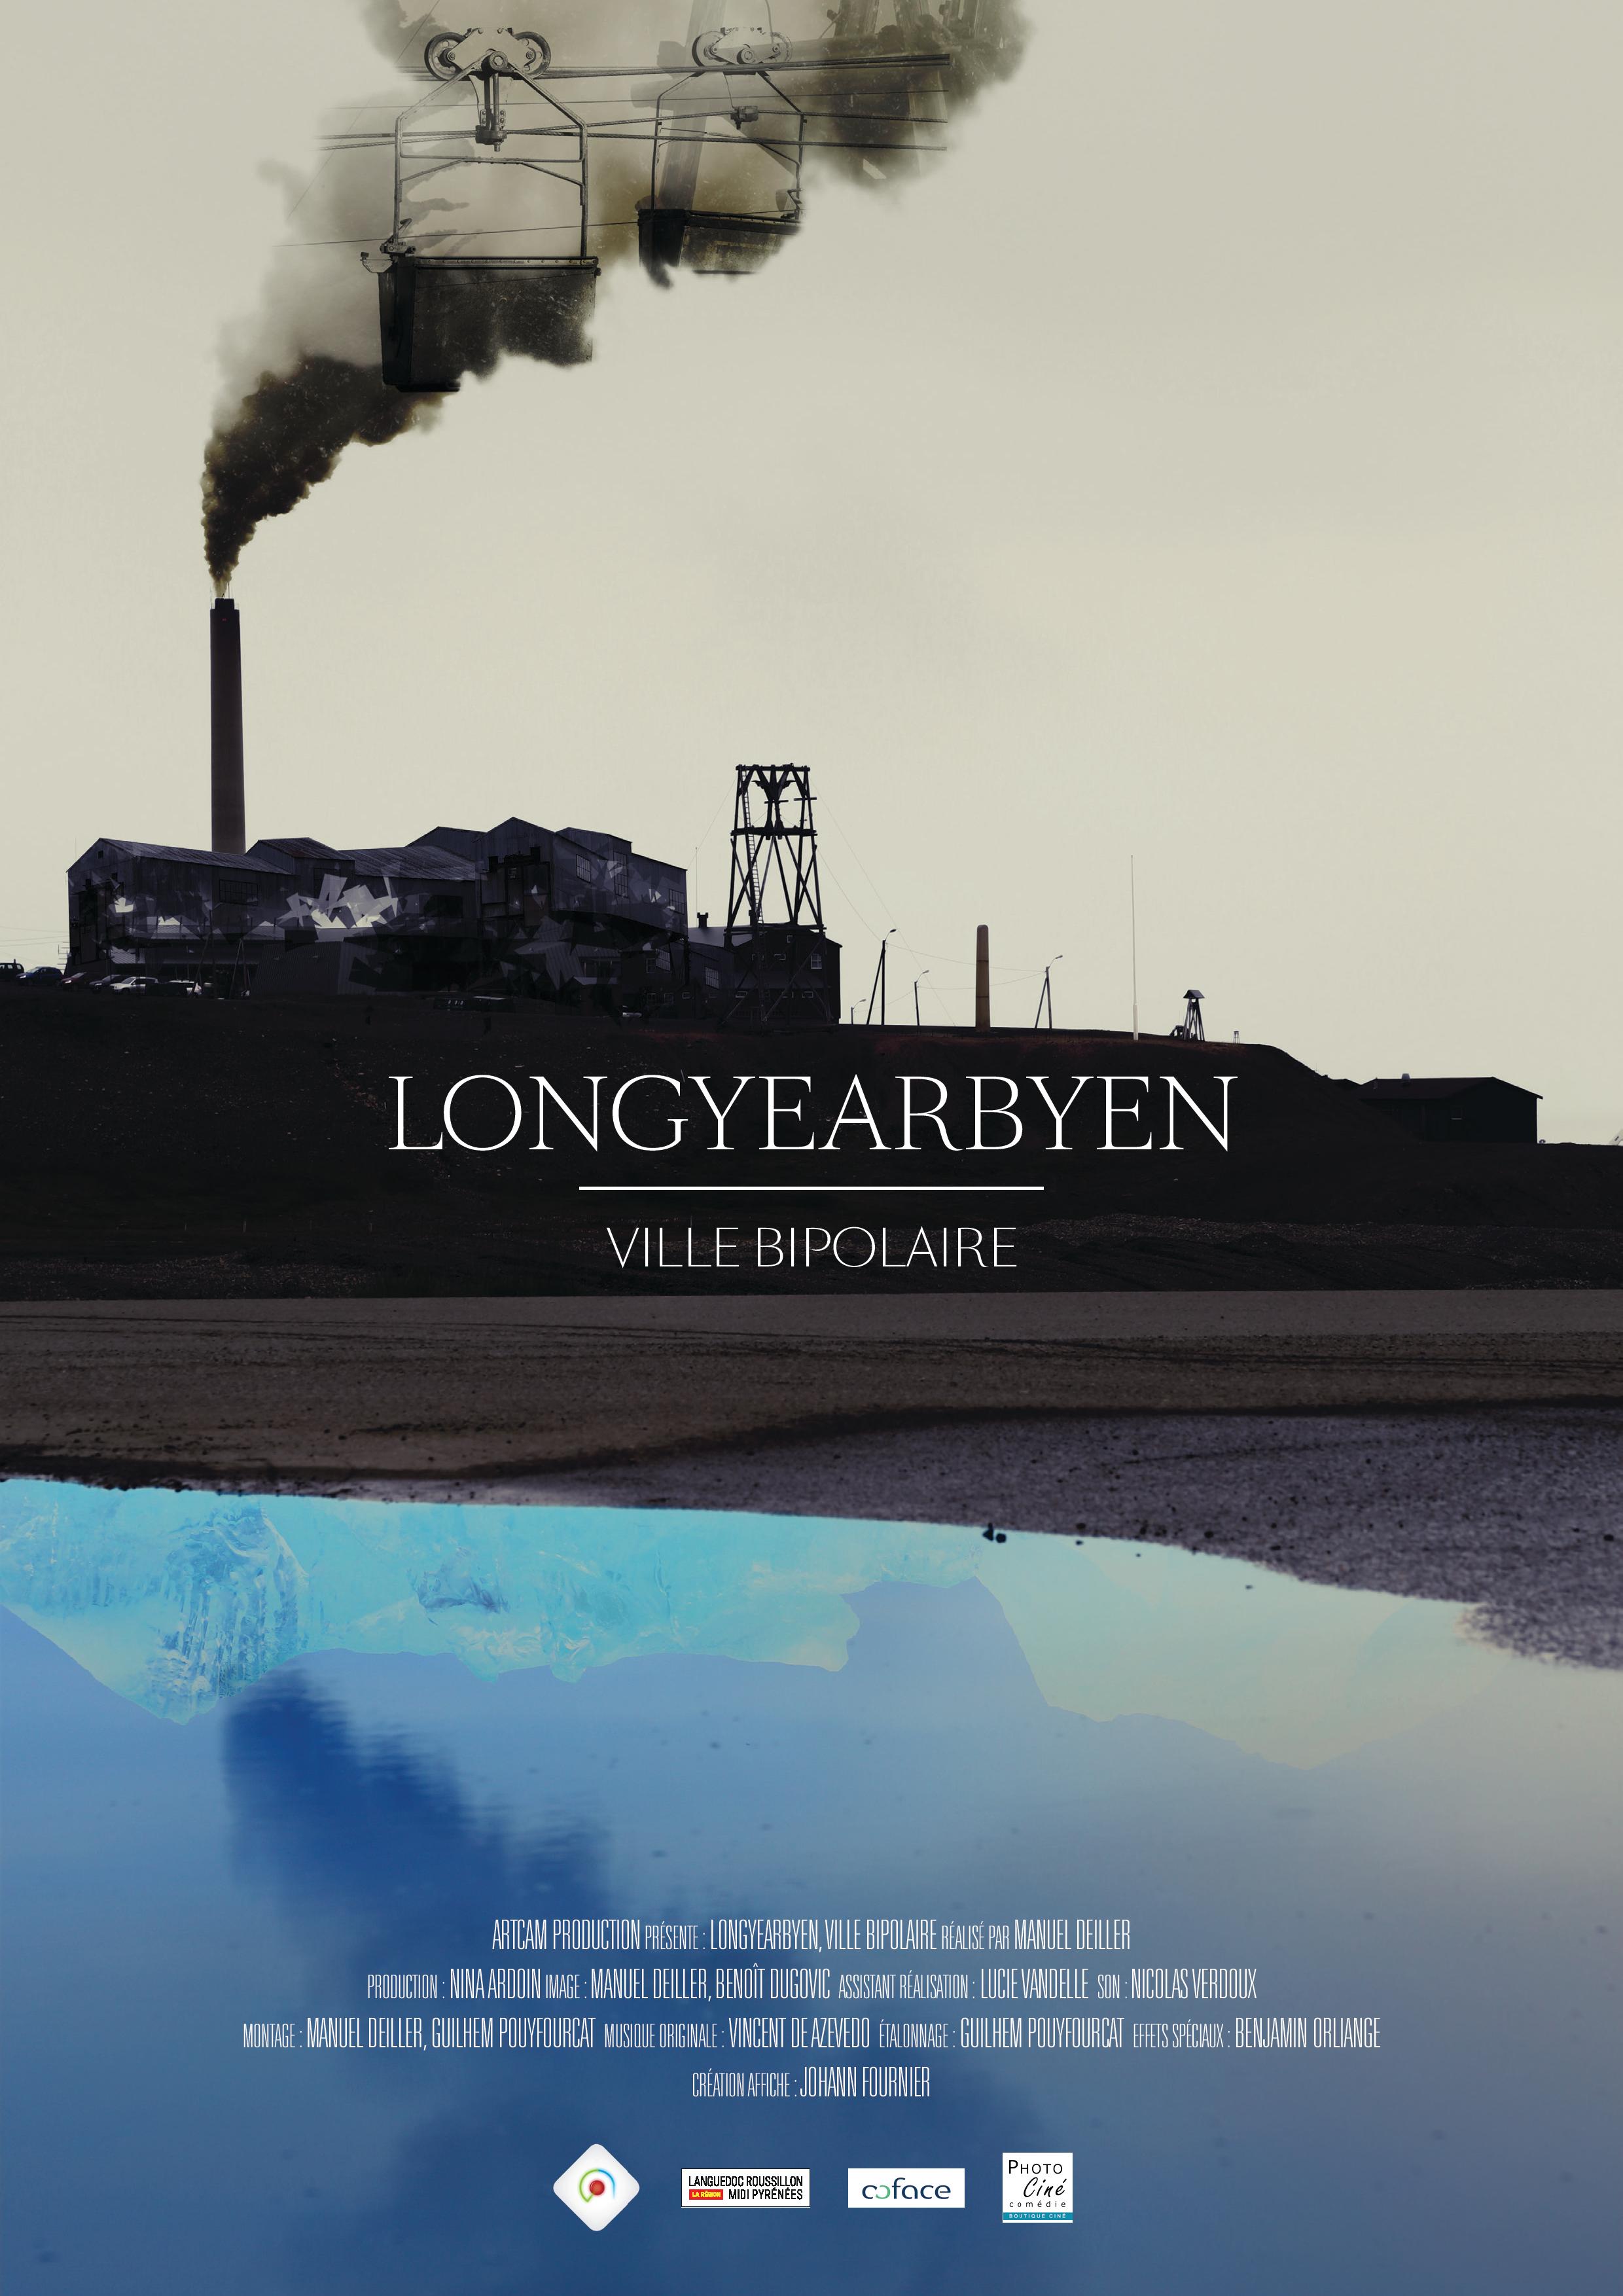 Longyearbyen, a bipolar city